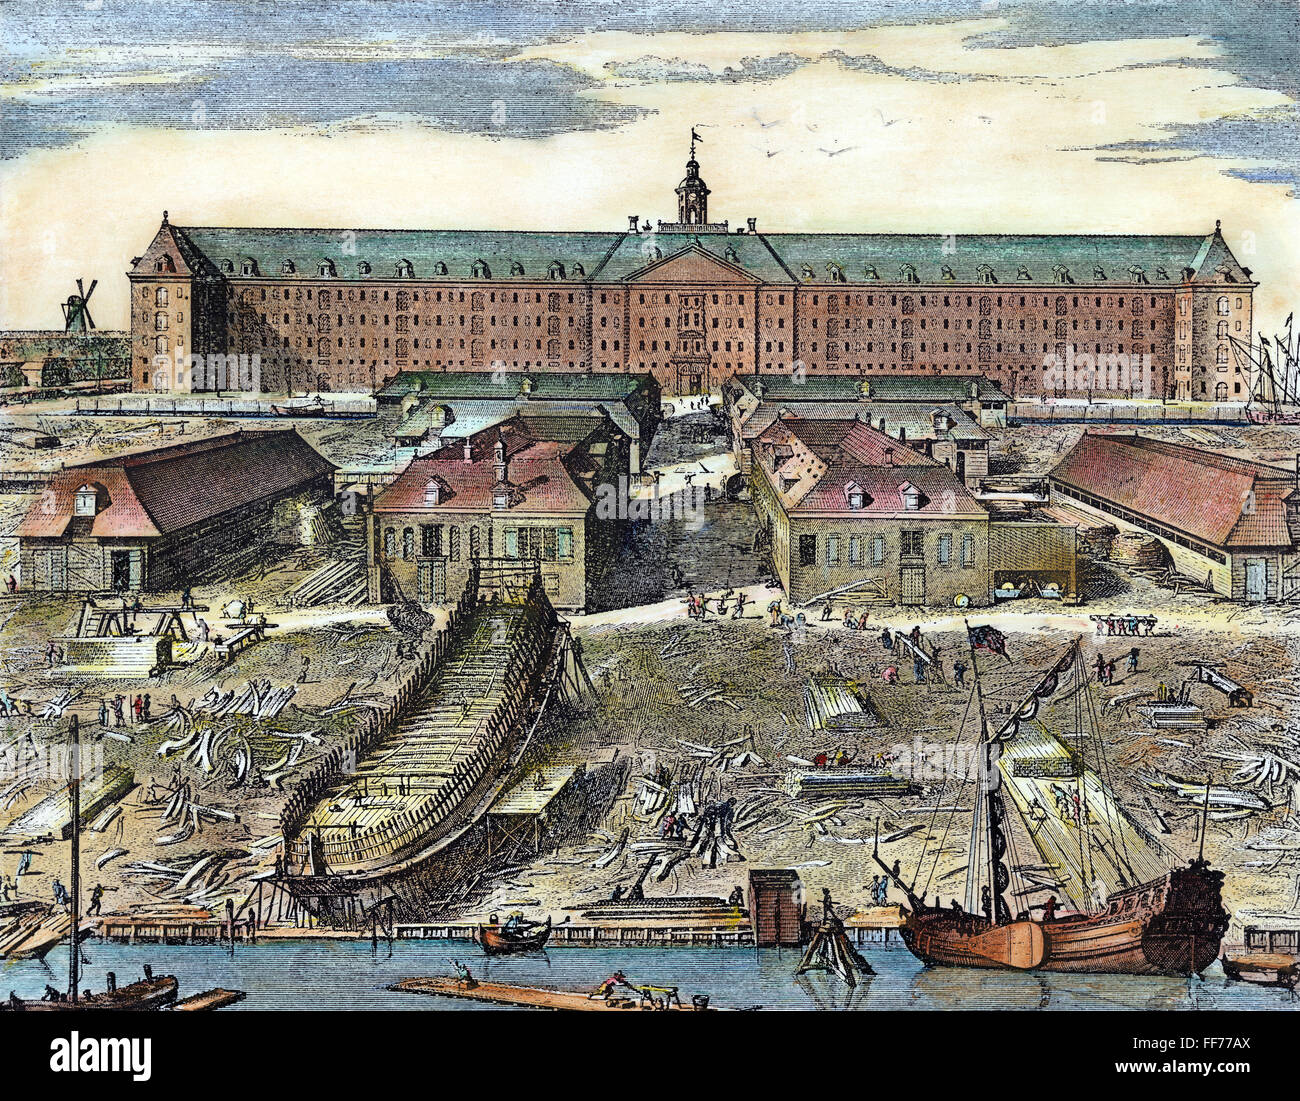 NIEDERLÄNDISCHE OSTINDIEN-KOMPANIE. /nWharf und Schiffbau Hof von der niederländischen Ostindien-Kompanie in Rotterdam. Kupfer, Gravur, 1694, von J. Mulder. Stockfoto